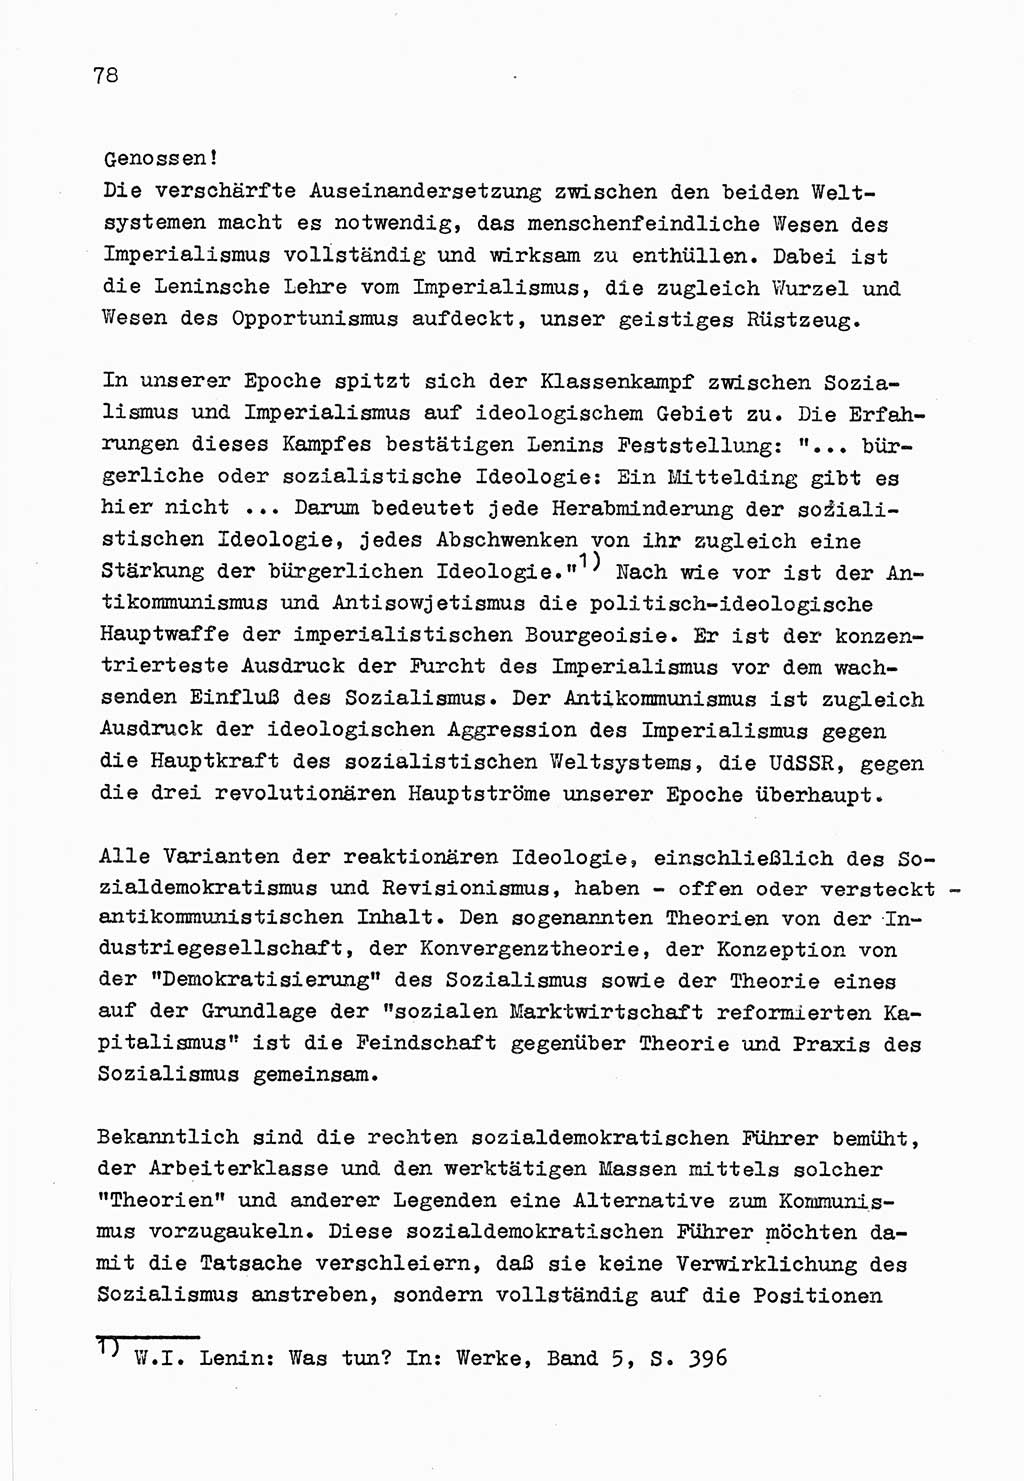 Zu Fragen der Parteiarbeit [Sozialistische Einheitspartei Deutschlands (SED) Deutsche Demokratische Republik (DDR)] 1979, Seite 78 (Fr. PA SED DDR 1979, S. 78)